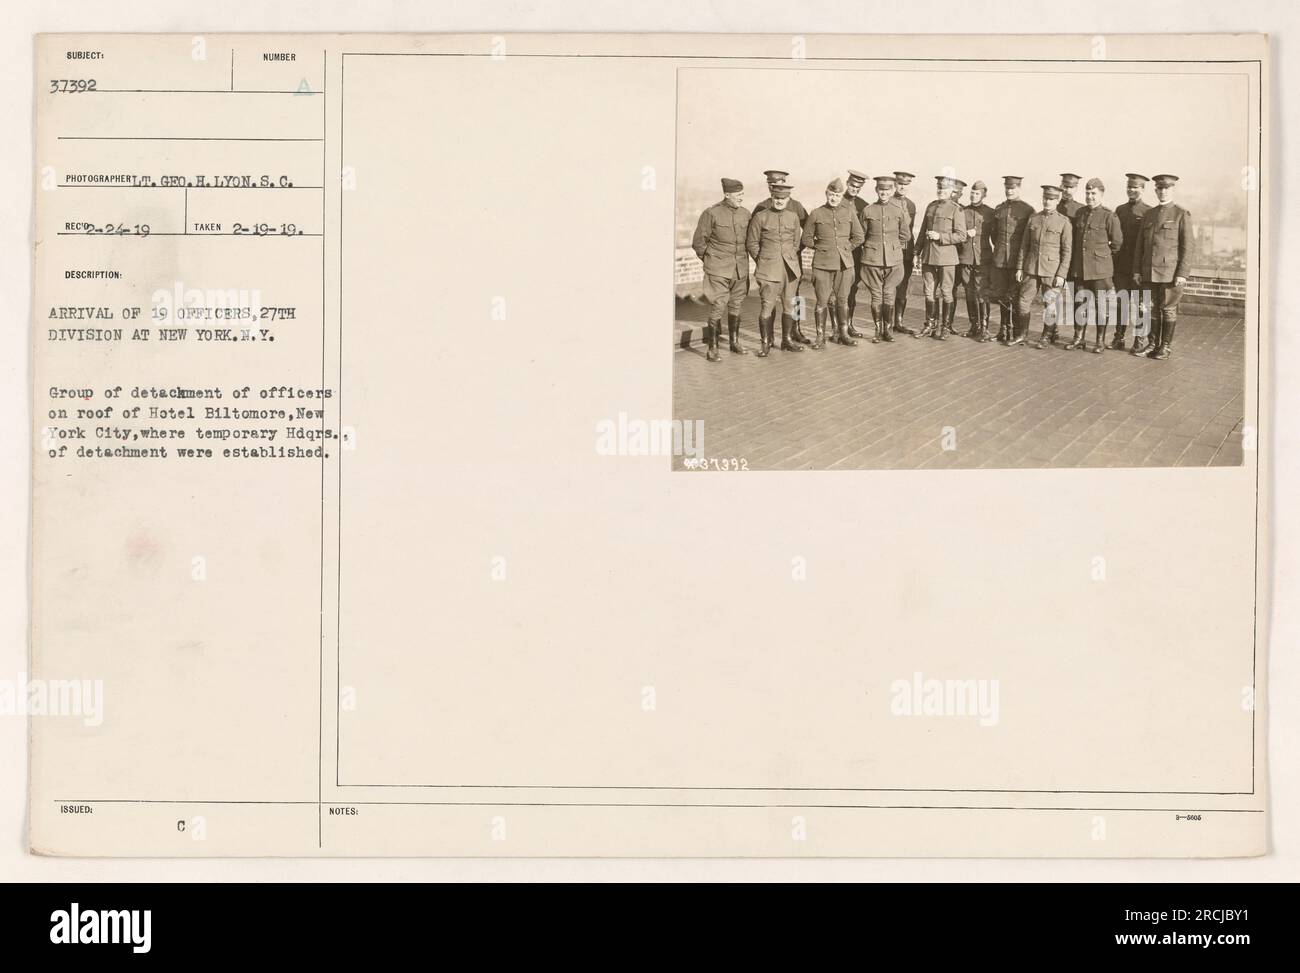 Eine Gruppe von 19 Beamten der 27. Division trifft am 19. Februar 1919 im Hotel Biltmore in New York City ein. Dieses Foto zeigt die Offiziere auf dem Dach des Hotels, das als provisorisches Hauptquartier für ihre Einheit diente. Bildreferenz: 111-SC-37392. Stockfoto